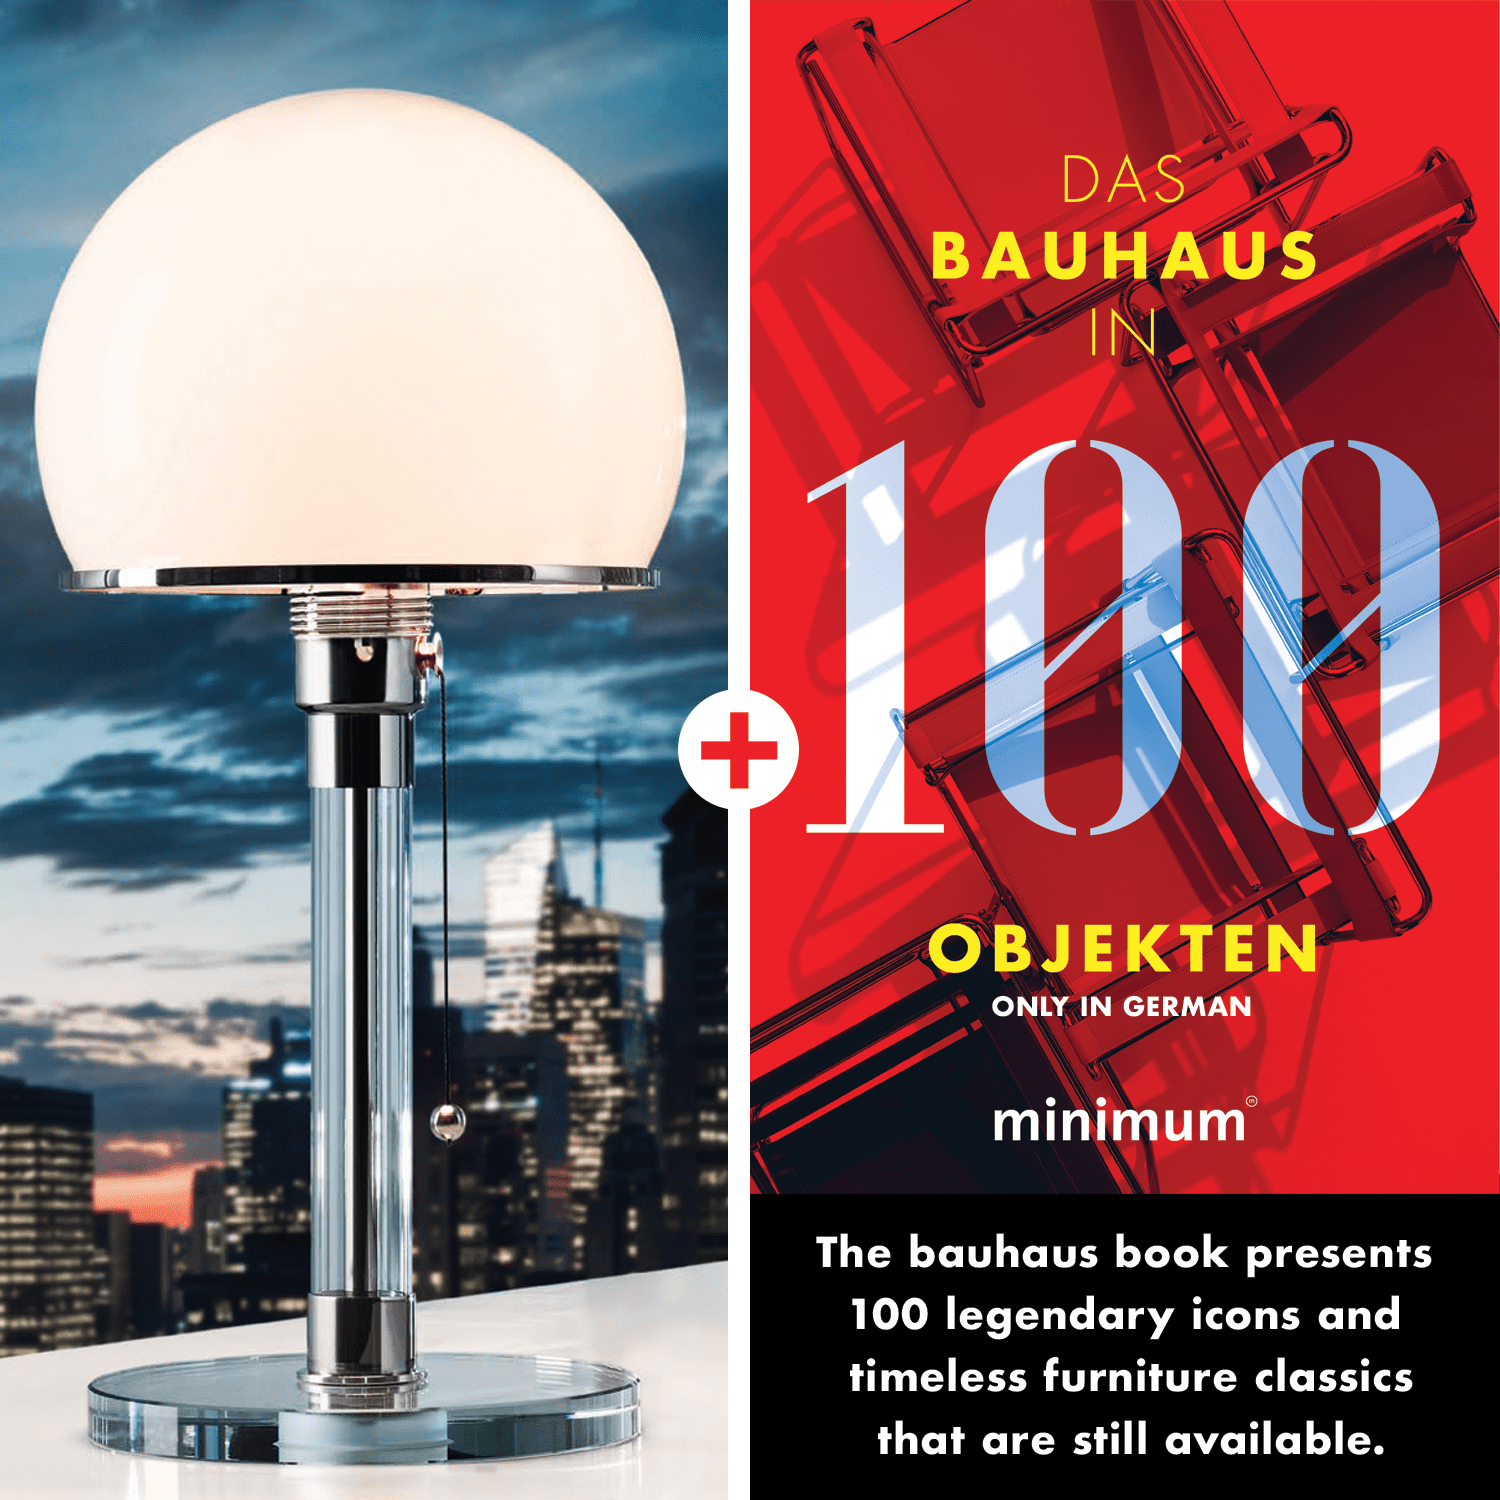 Image de Lampe Wagenfeld WG 24 + Bauhaus en 100 objets